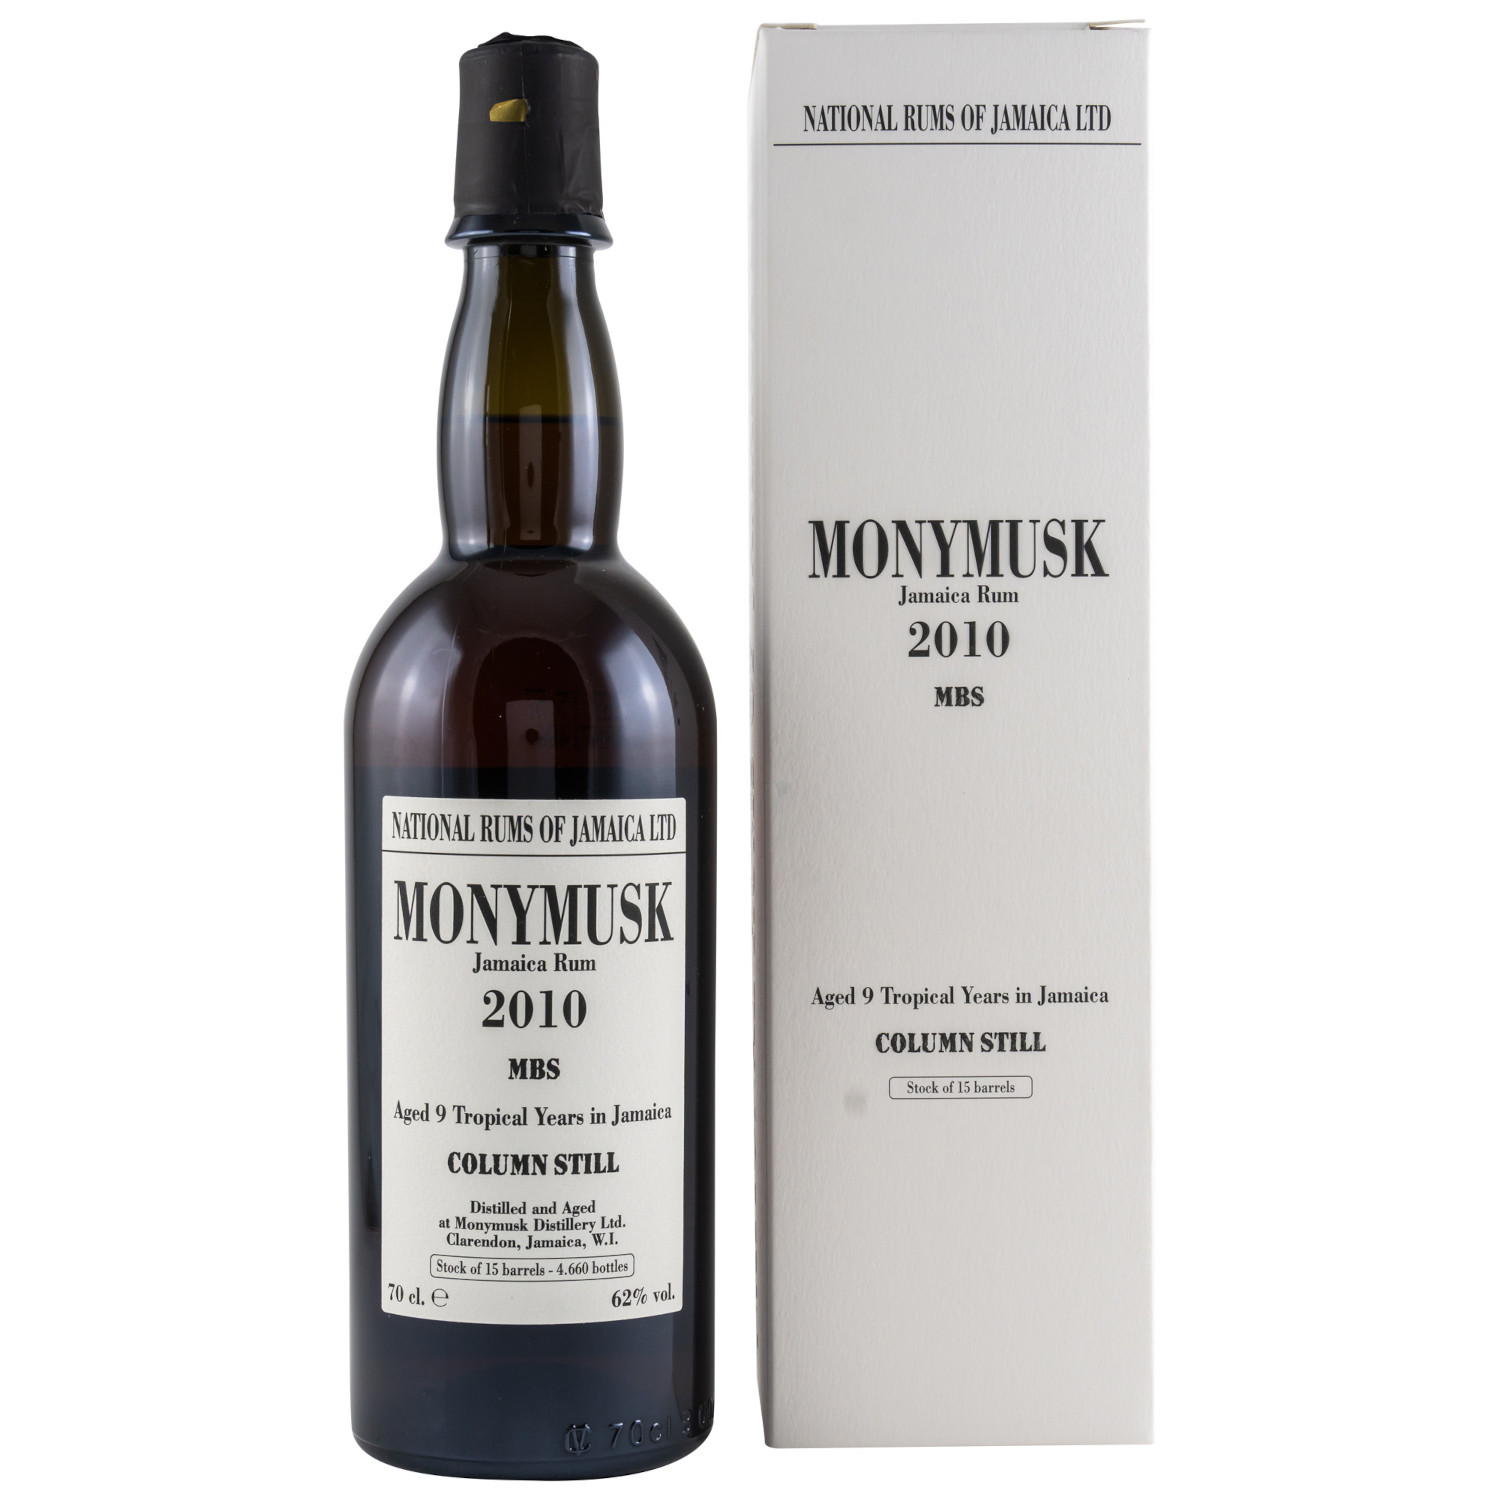 Flasche Monymusk Rum 2010 MSB